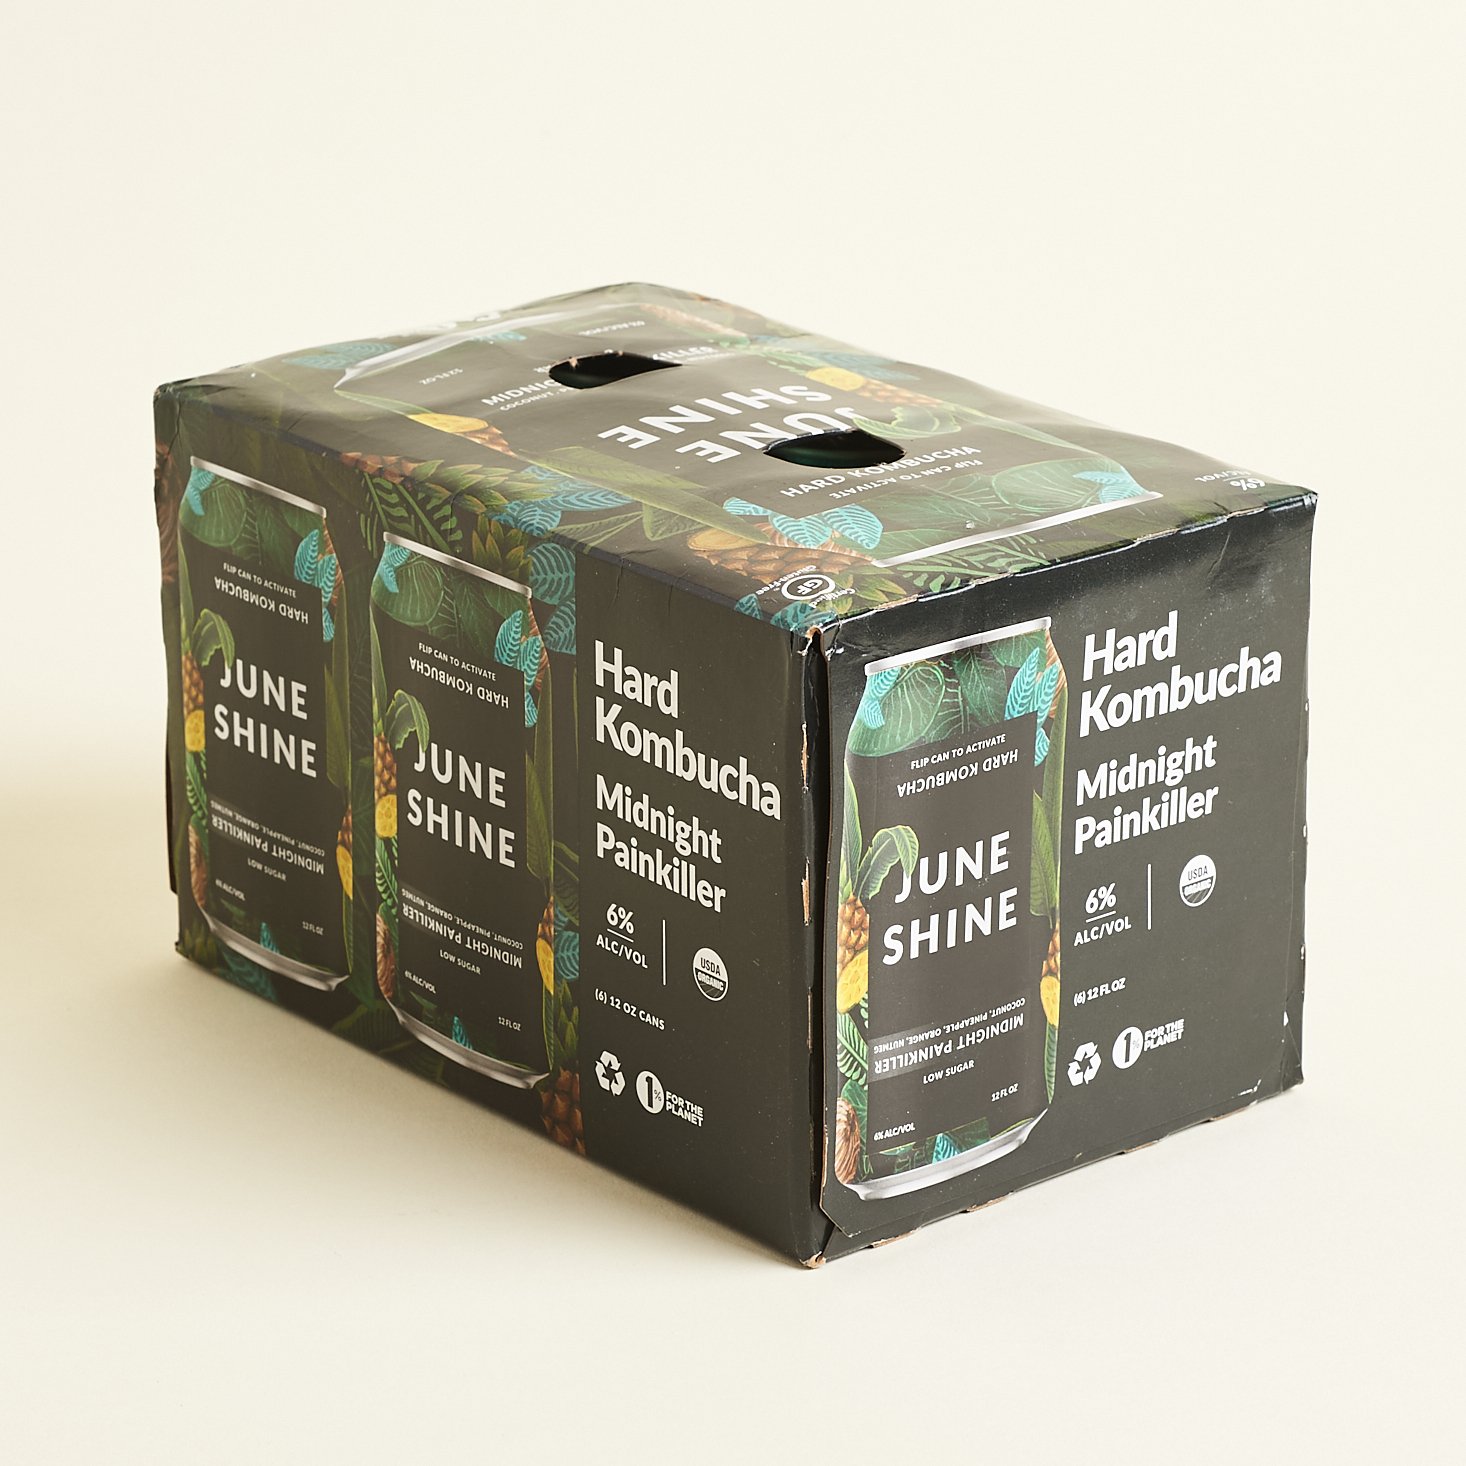 Box Front of Midnight Painkiller for JuneShine Sampler Pack